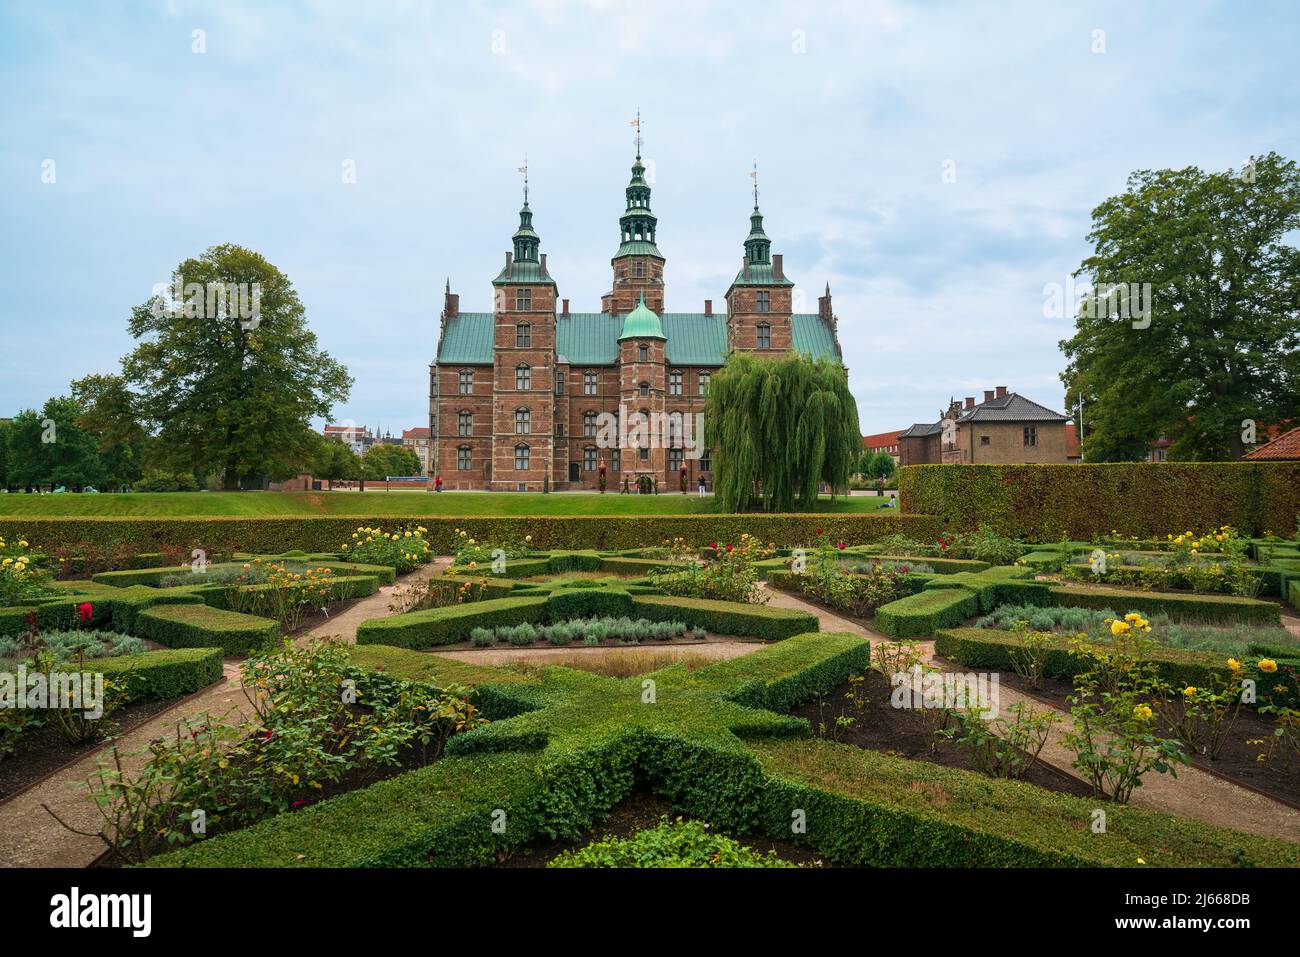 Copenhagen / Denmark - 09.20.2016: Rosenborg Castle (Danish: Kongens Have literally The King's Garden) built in 1606 by Christian IV. Stock Photo